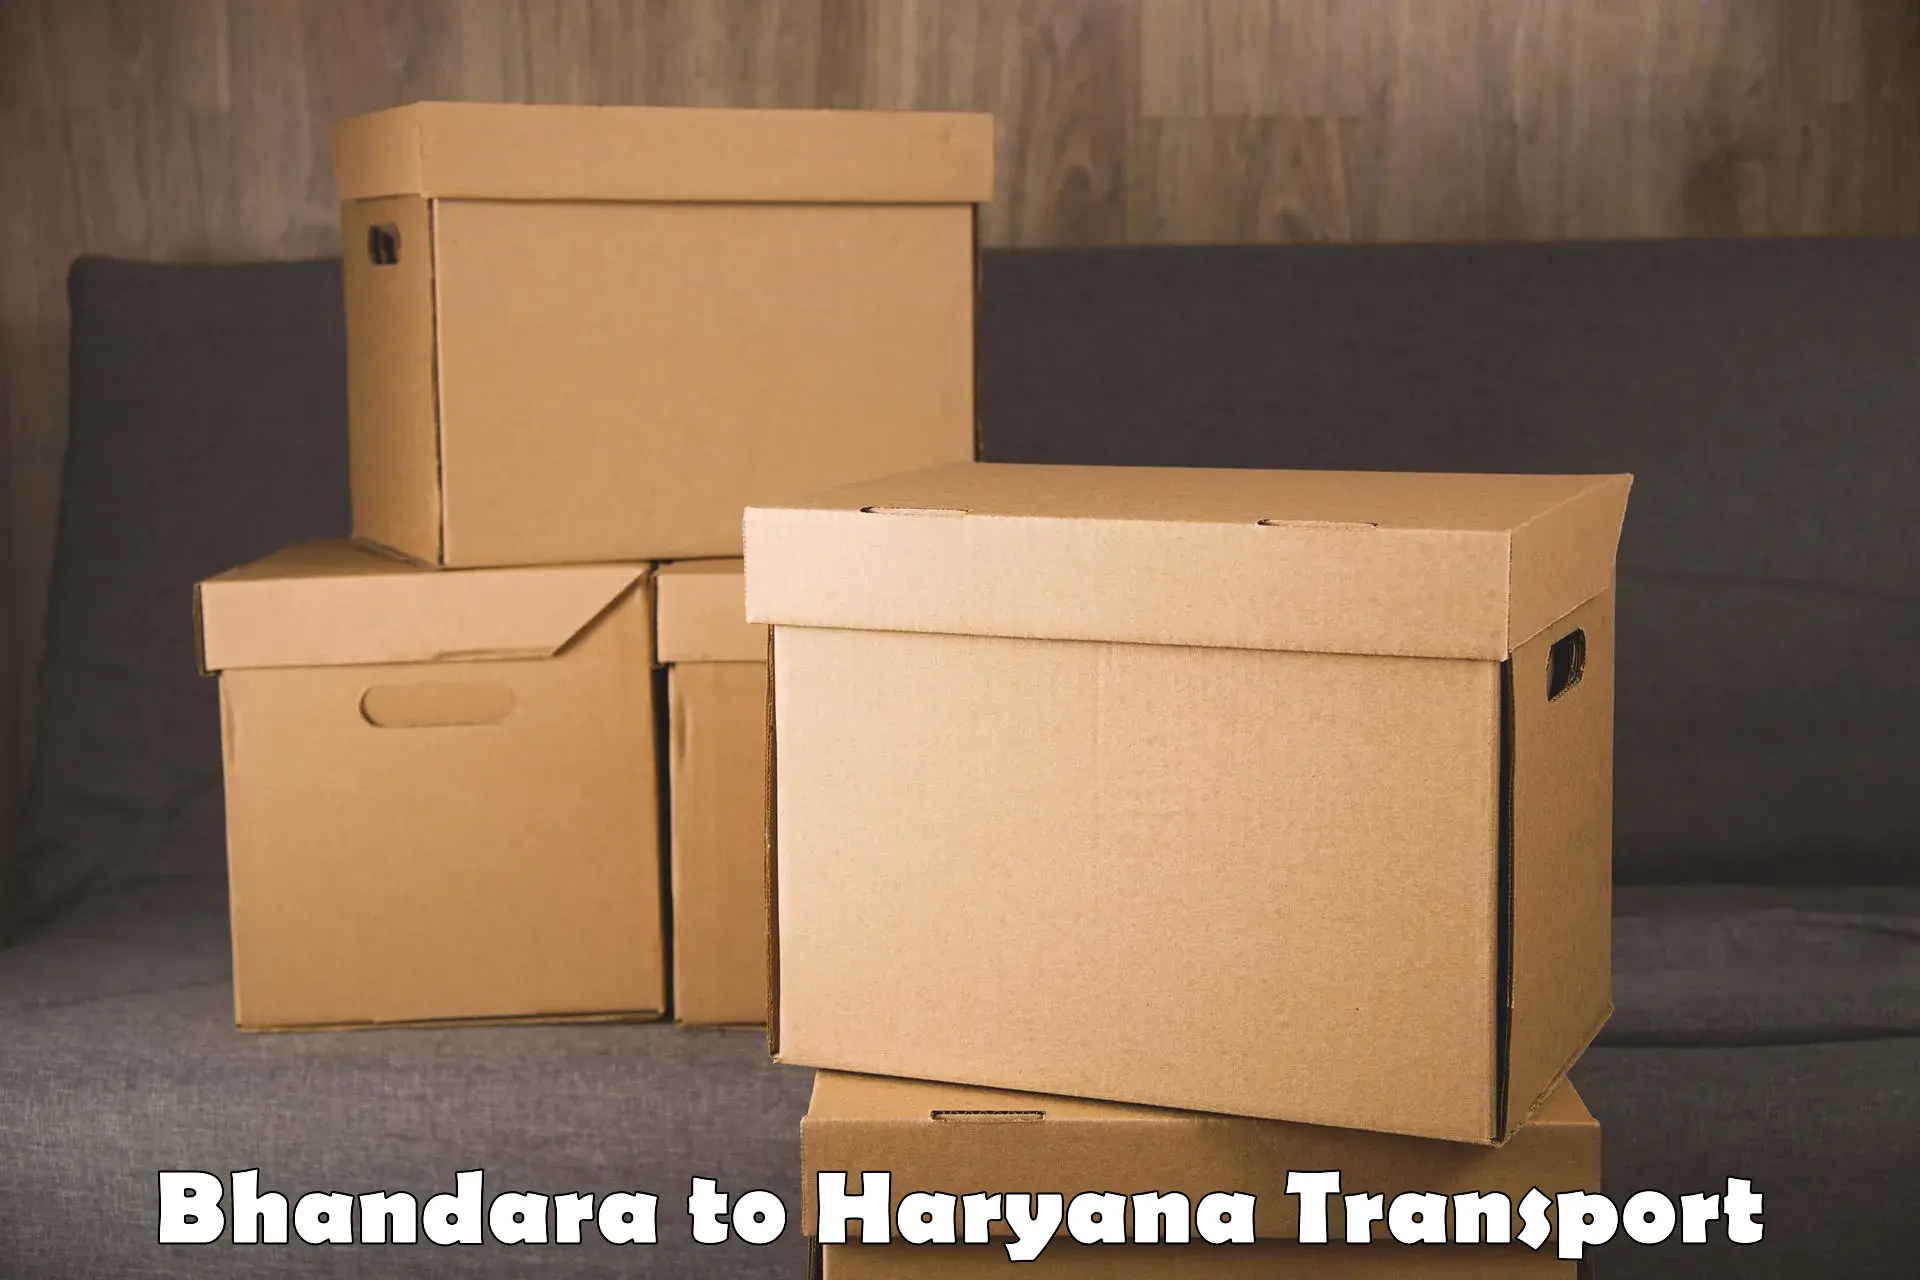 Furniture transport service Bhandara to Bhiwani